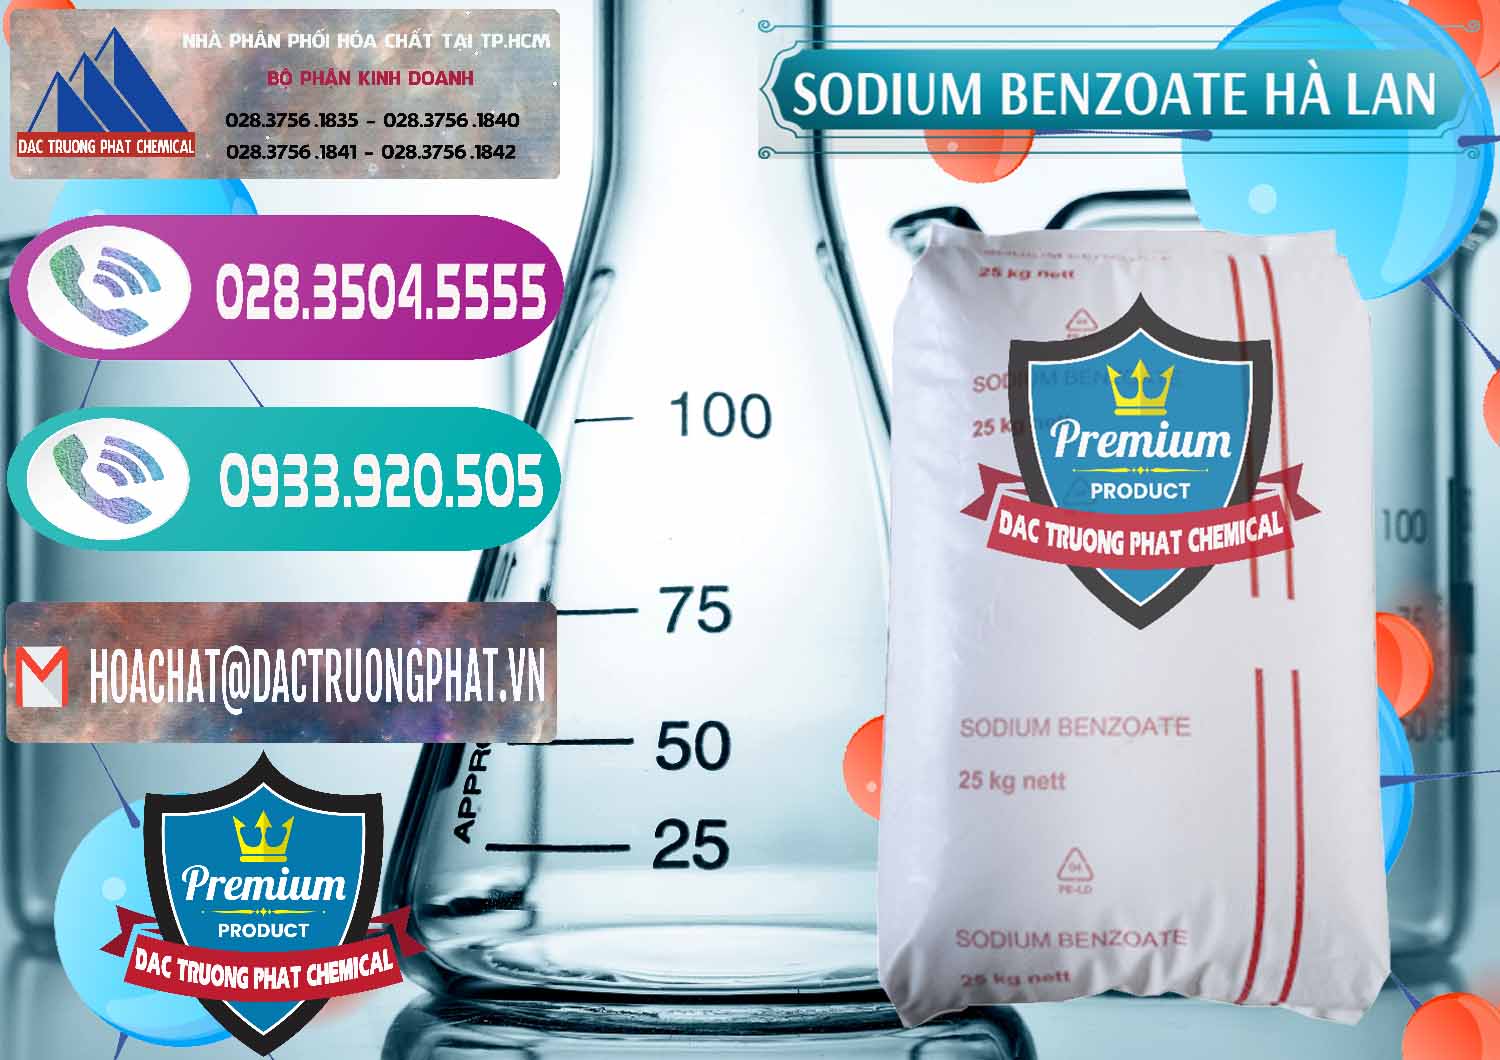 Cty kinh doanh và bán Sodium Benzoate - Mốc Bột Chữ Cam Hà Lan Netherlands - 0360 - Bán và cung cấp hóa chất tại TP.HCM - hoachatxulynuoc.com